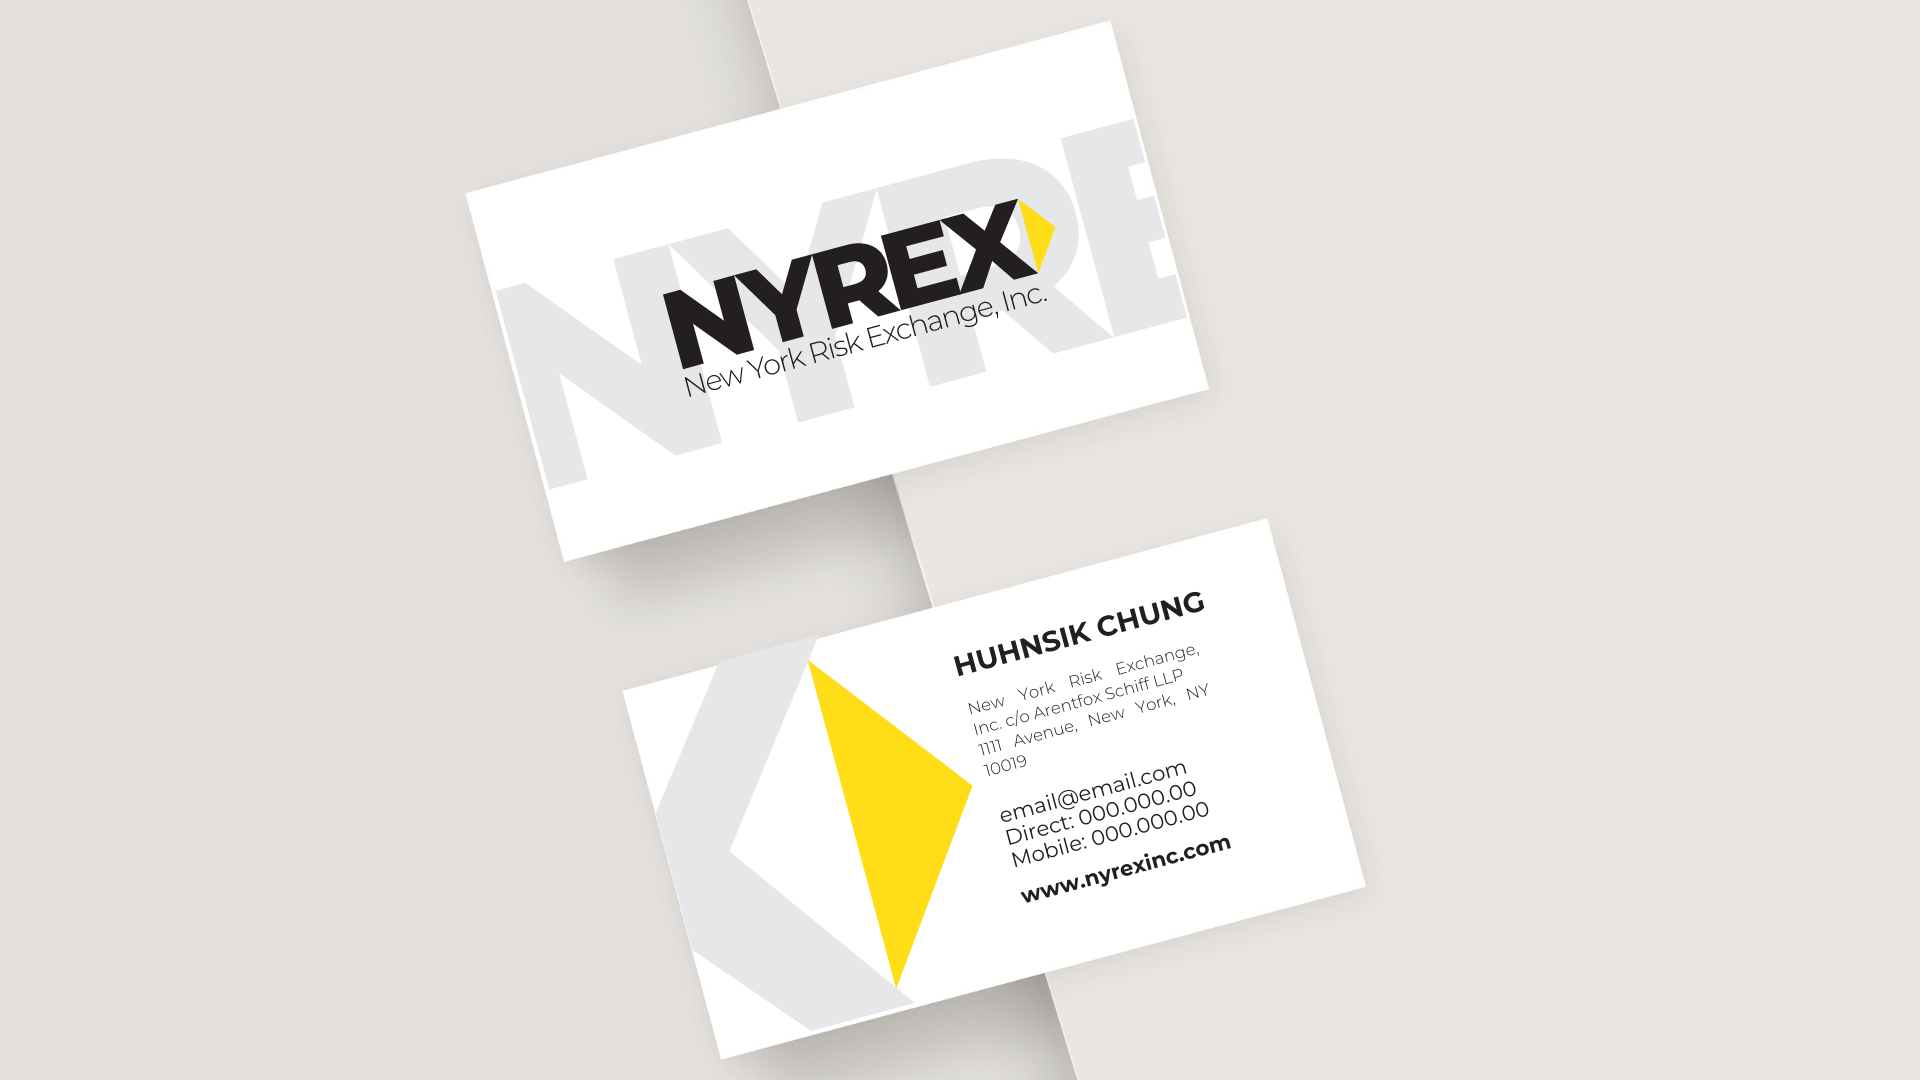 NYREX - Brand Identity Kit